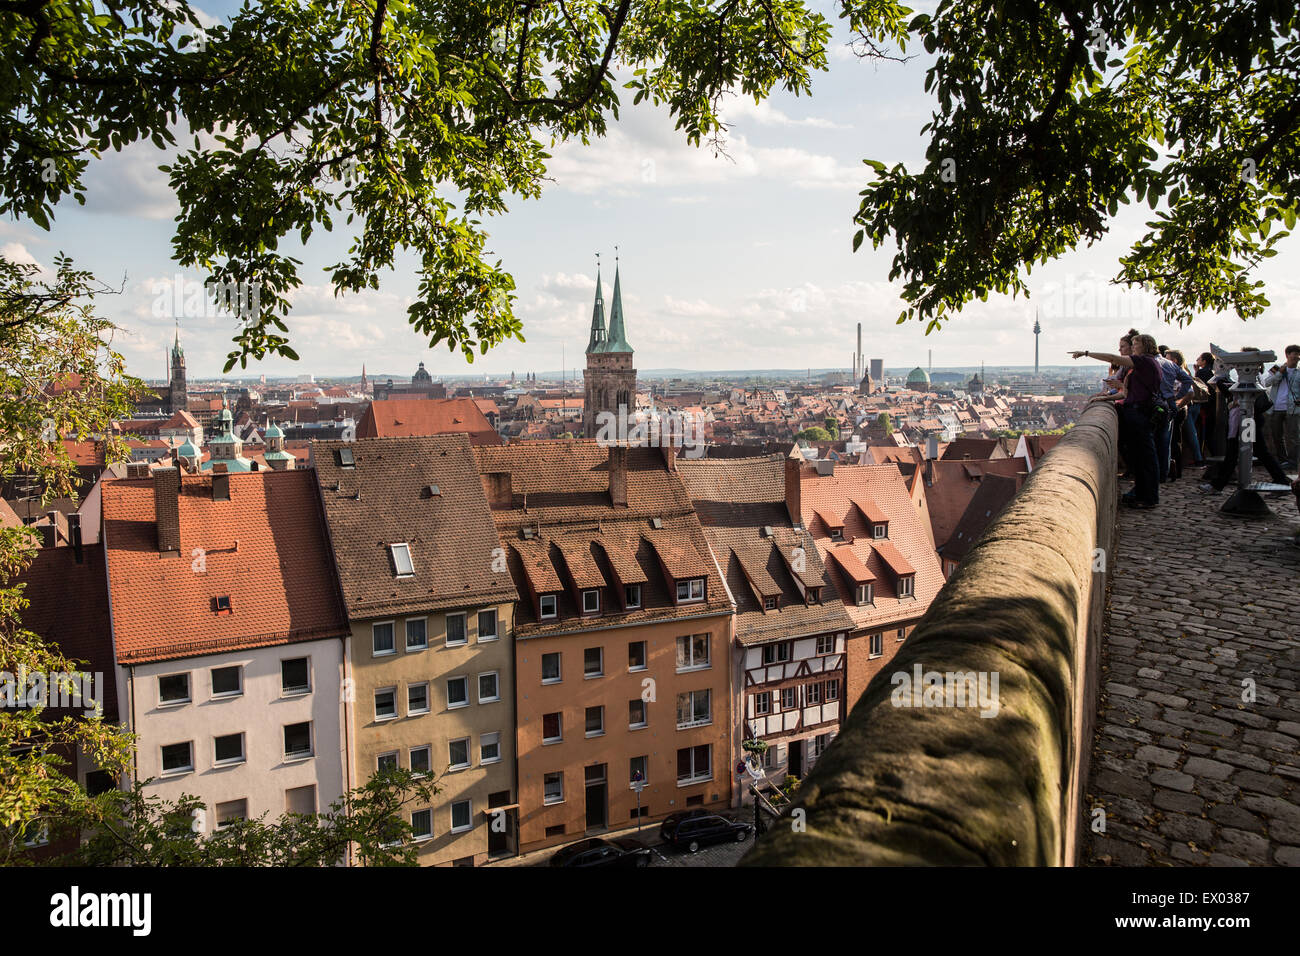 Gruppo di turisti la visualizzazione della città vecchia, Norimberga, Germania Foto Stock